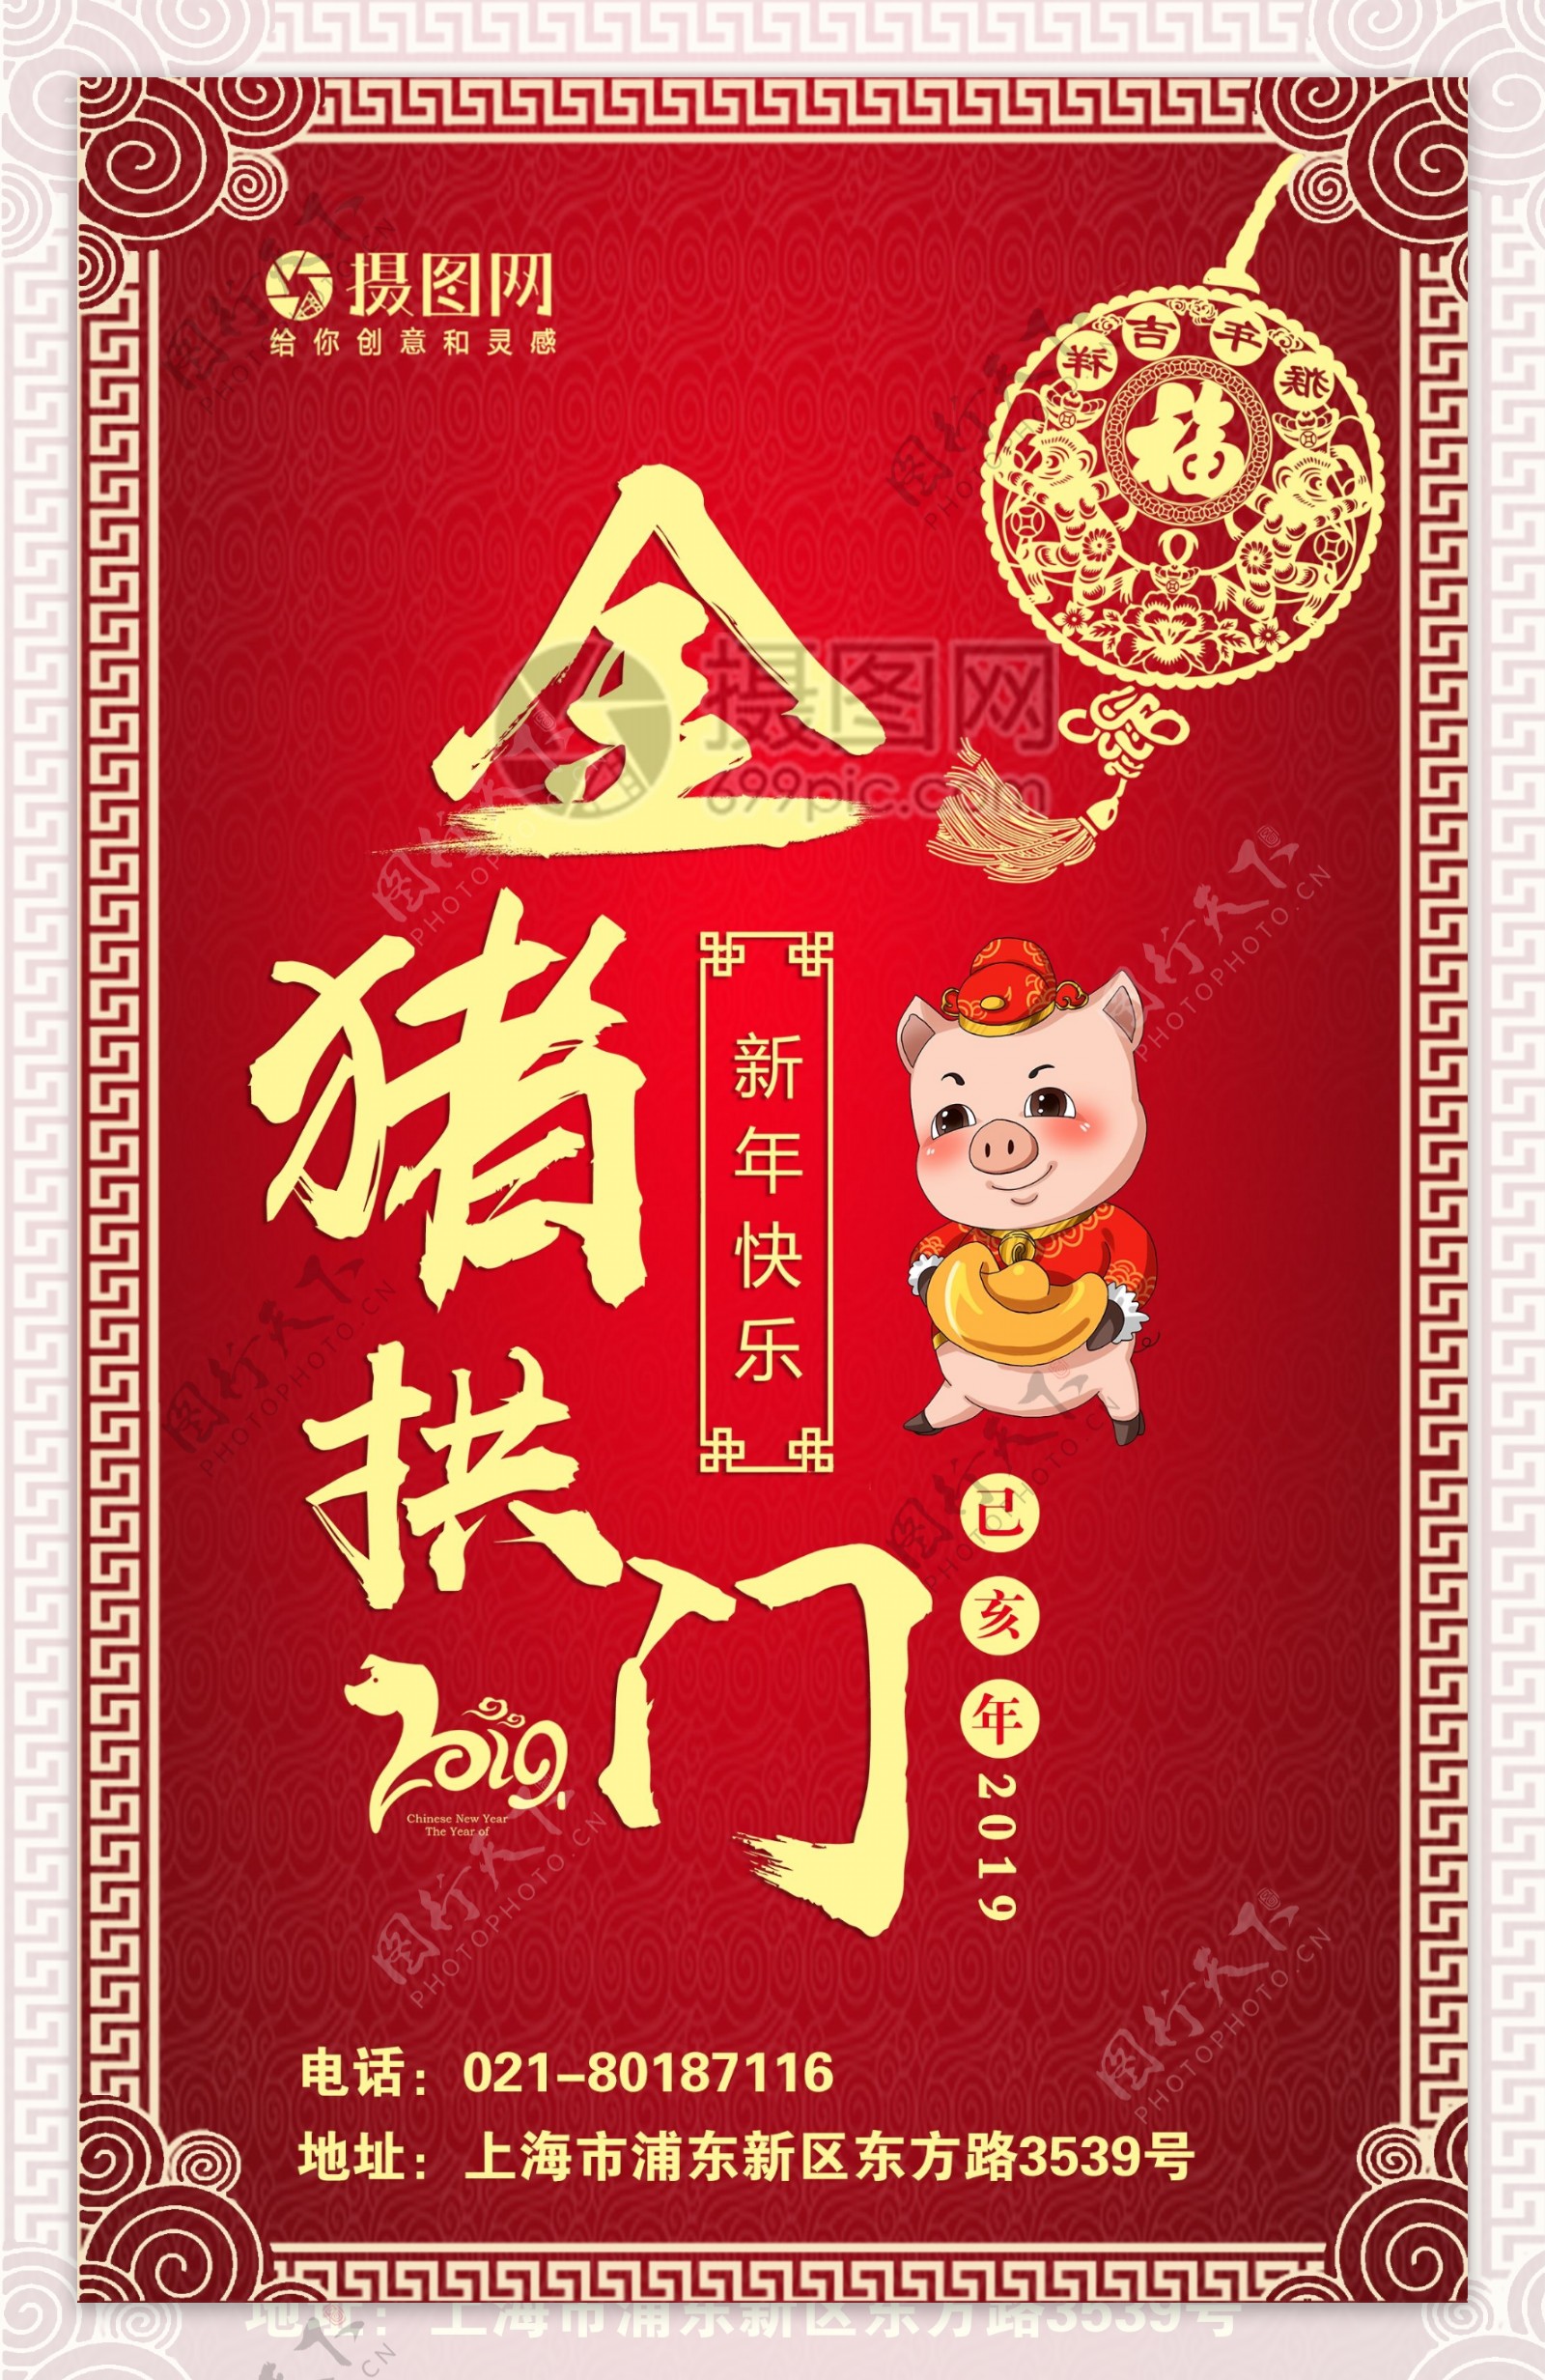 2019猪年新春快乐海报